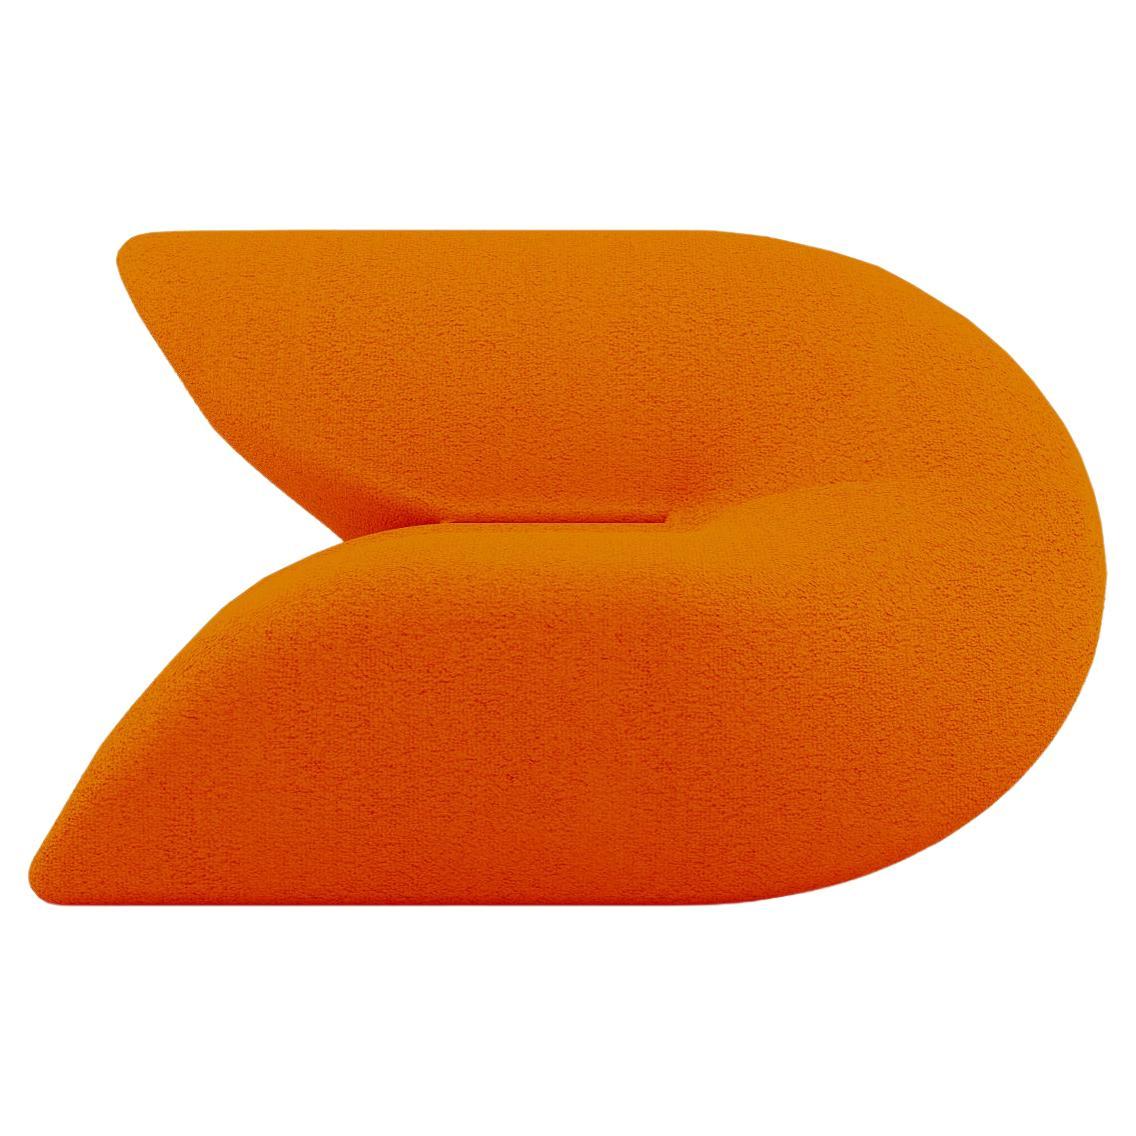 Delta Armchair - Modern Tangerine Orange Upholstered Armchair For Sale